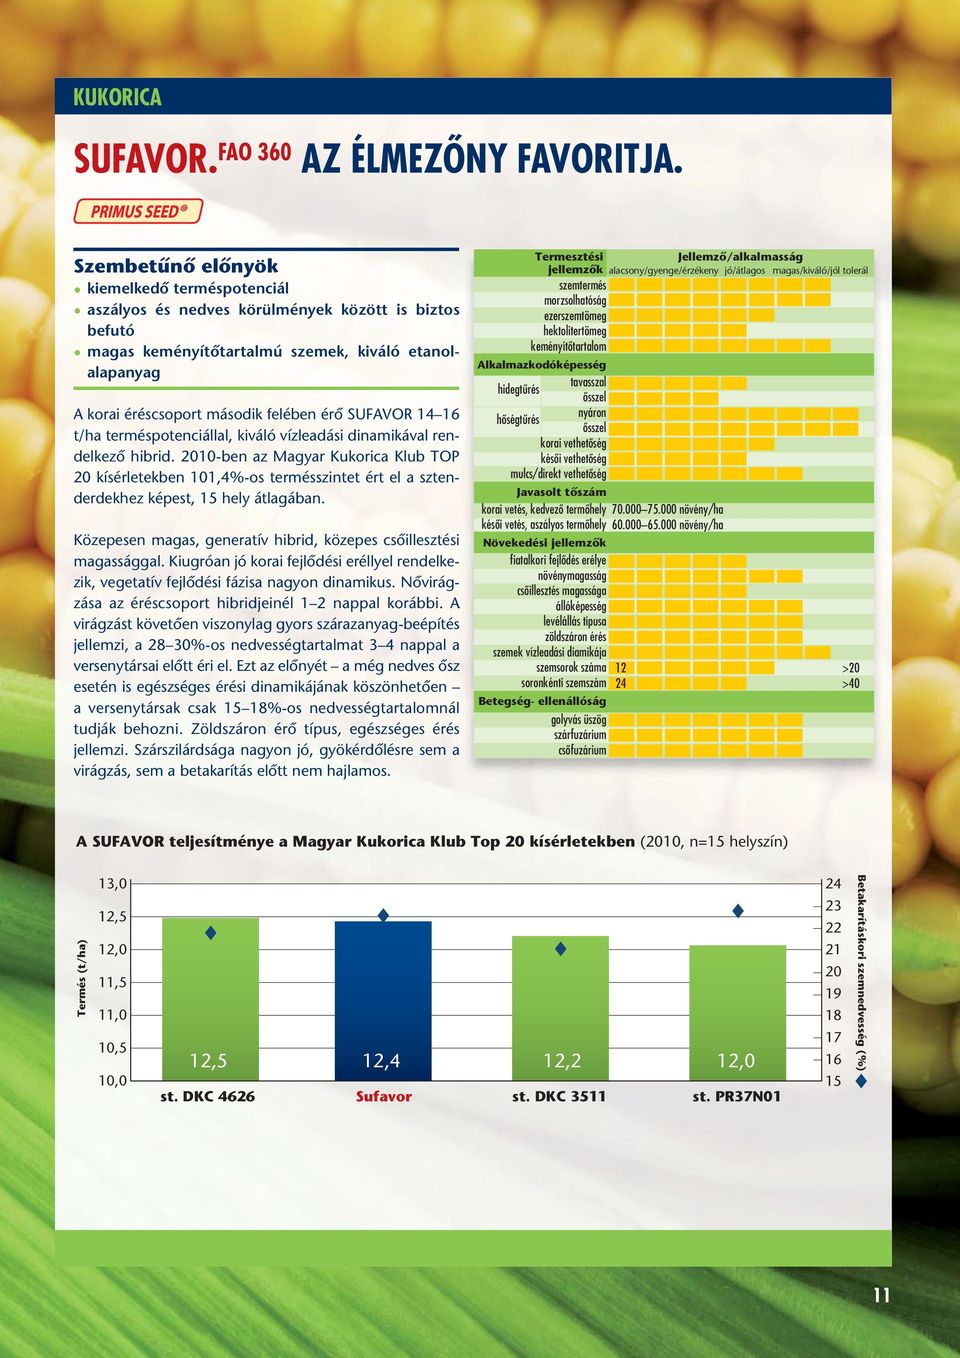 terméspotenciállal, kiváló vízleadási dinamikával rendelkezô hibrid. 2010-ben az Magyar Kukorica Klub TOP 20 kísérletekben 101,4%-os termésszintet ért el a sztenderdekhez képest, 15 hely átlagában.